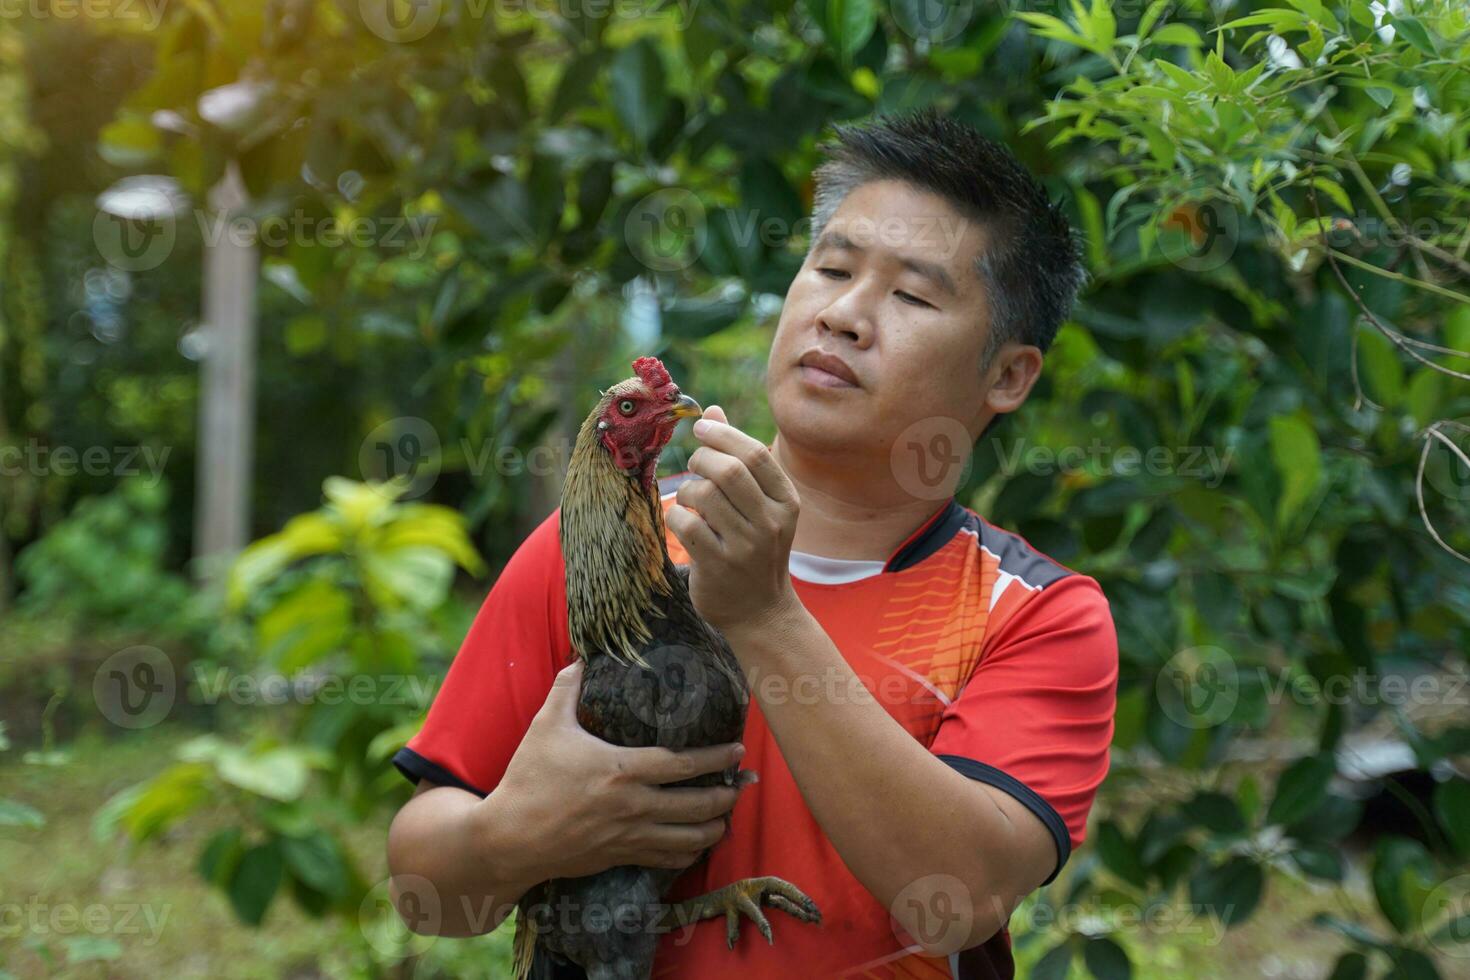 asiatisk man praxis stridande kukar på hans sällskapsdjur som är en lokal- ras av kyckling Uppfostrad för sporter spel föder upp stridande kukar är därför ett yrke den där genererar Bra inkomst för de uppfödare. foto